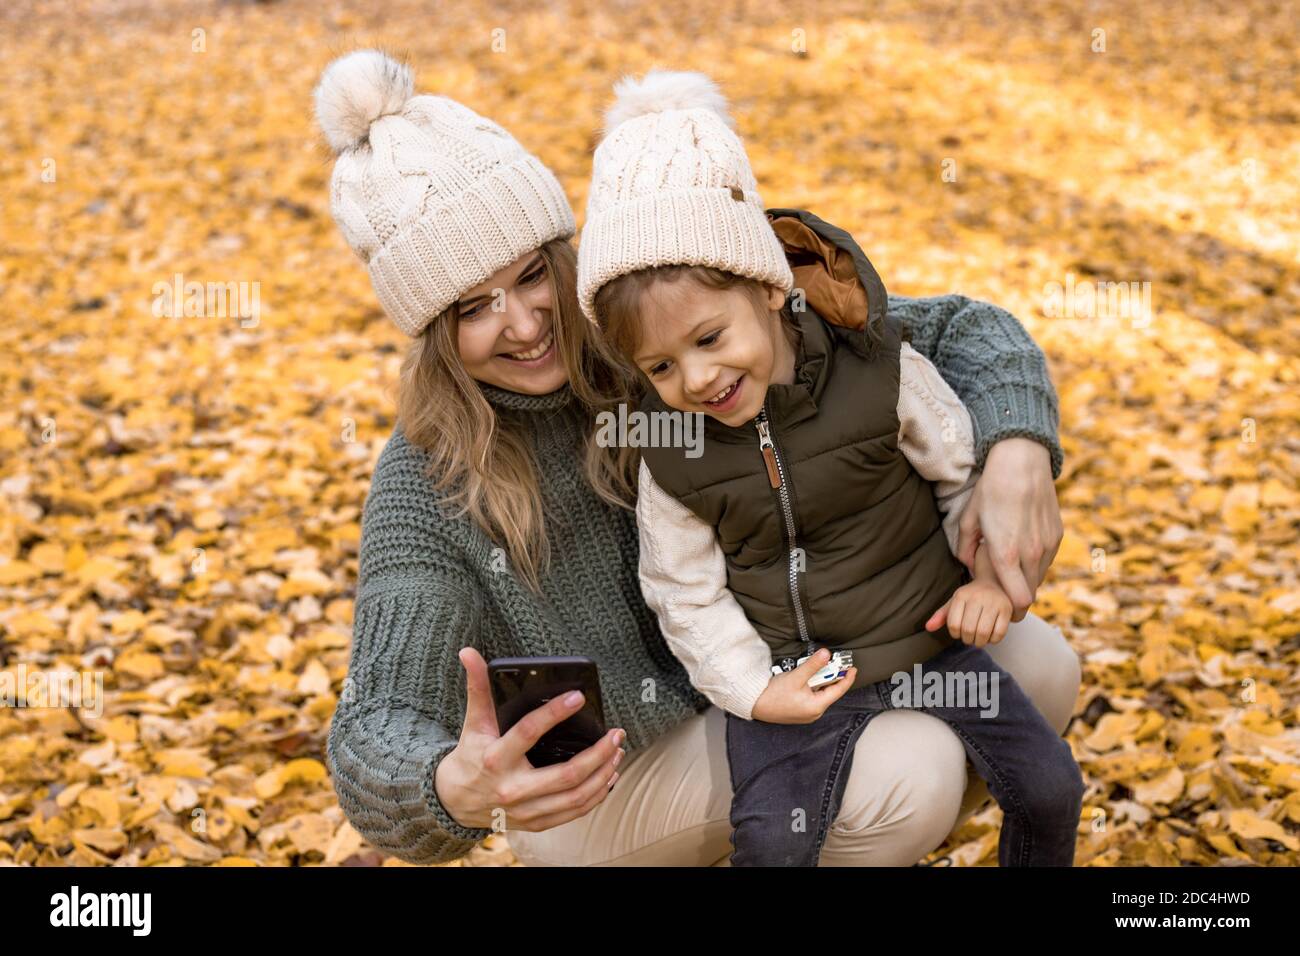 Fotos von glücklicher und lächelnder Mutter. Mutter mit kleinem Sohn in einem Herbstpark inmitten gelber Laubbäume machen ein Selfie oder nehmen eine Videobotschaft für Familie und auf Stockfoto